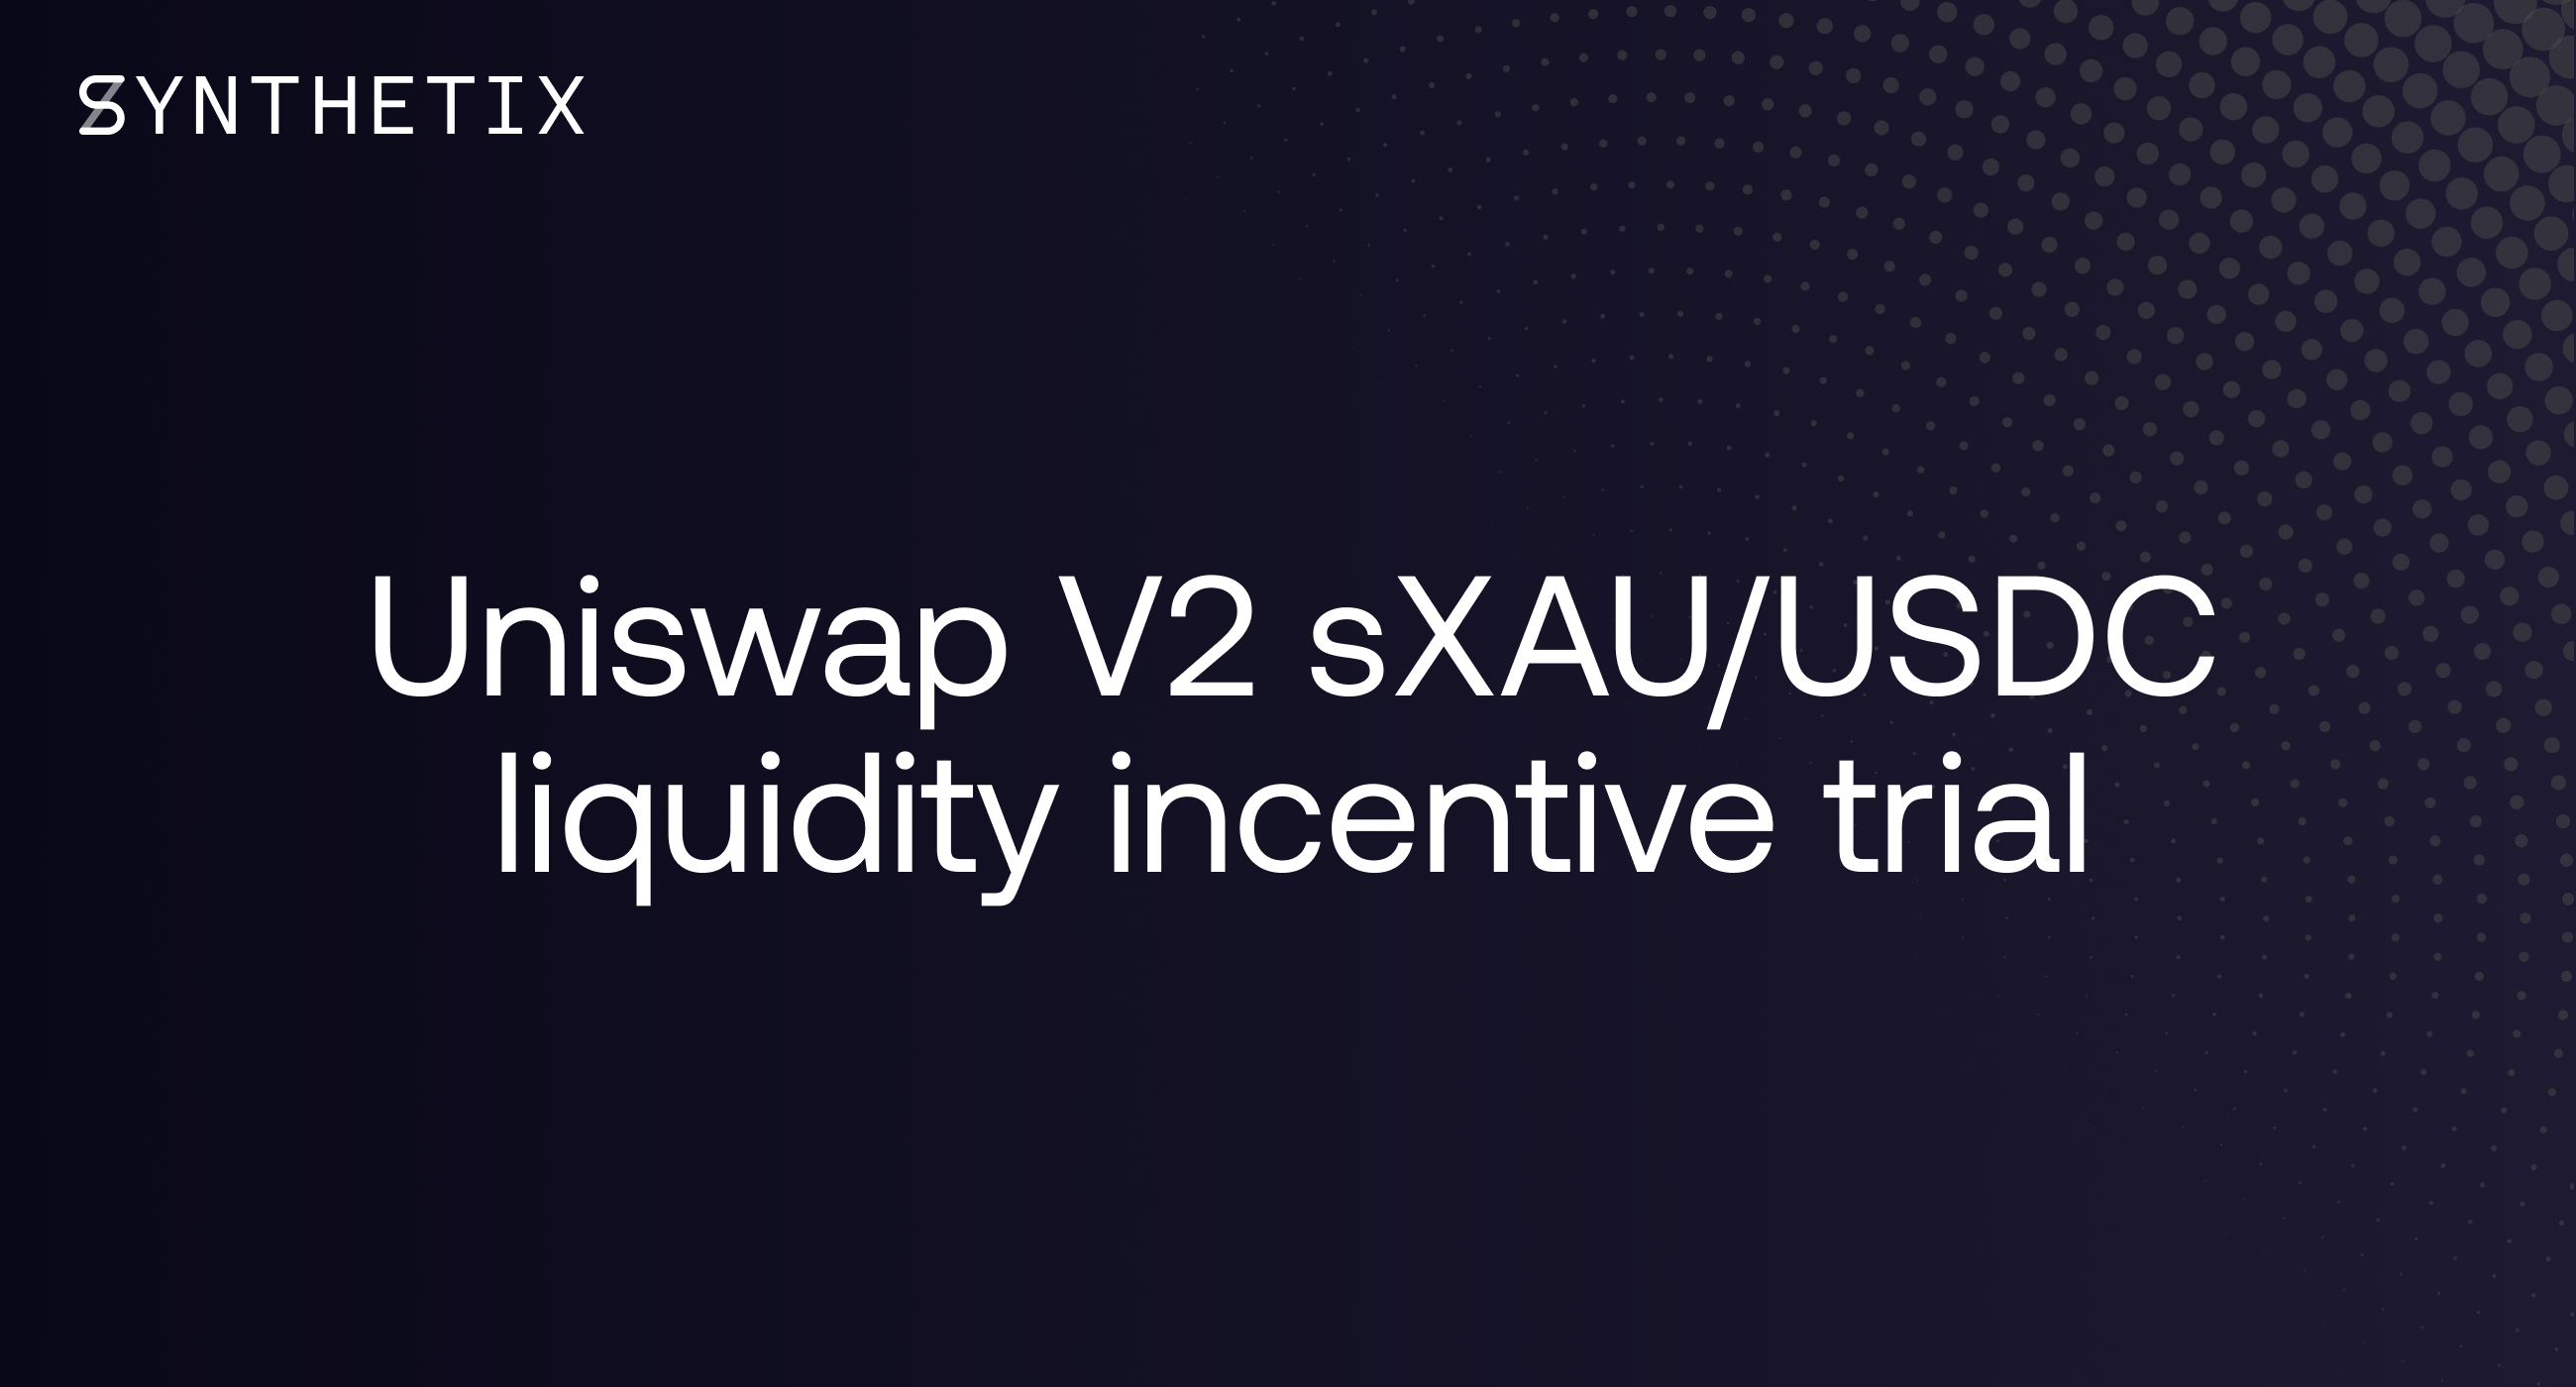 Uniswap V2 sXAU/USDC liquidity incentive trial